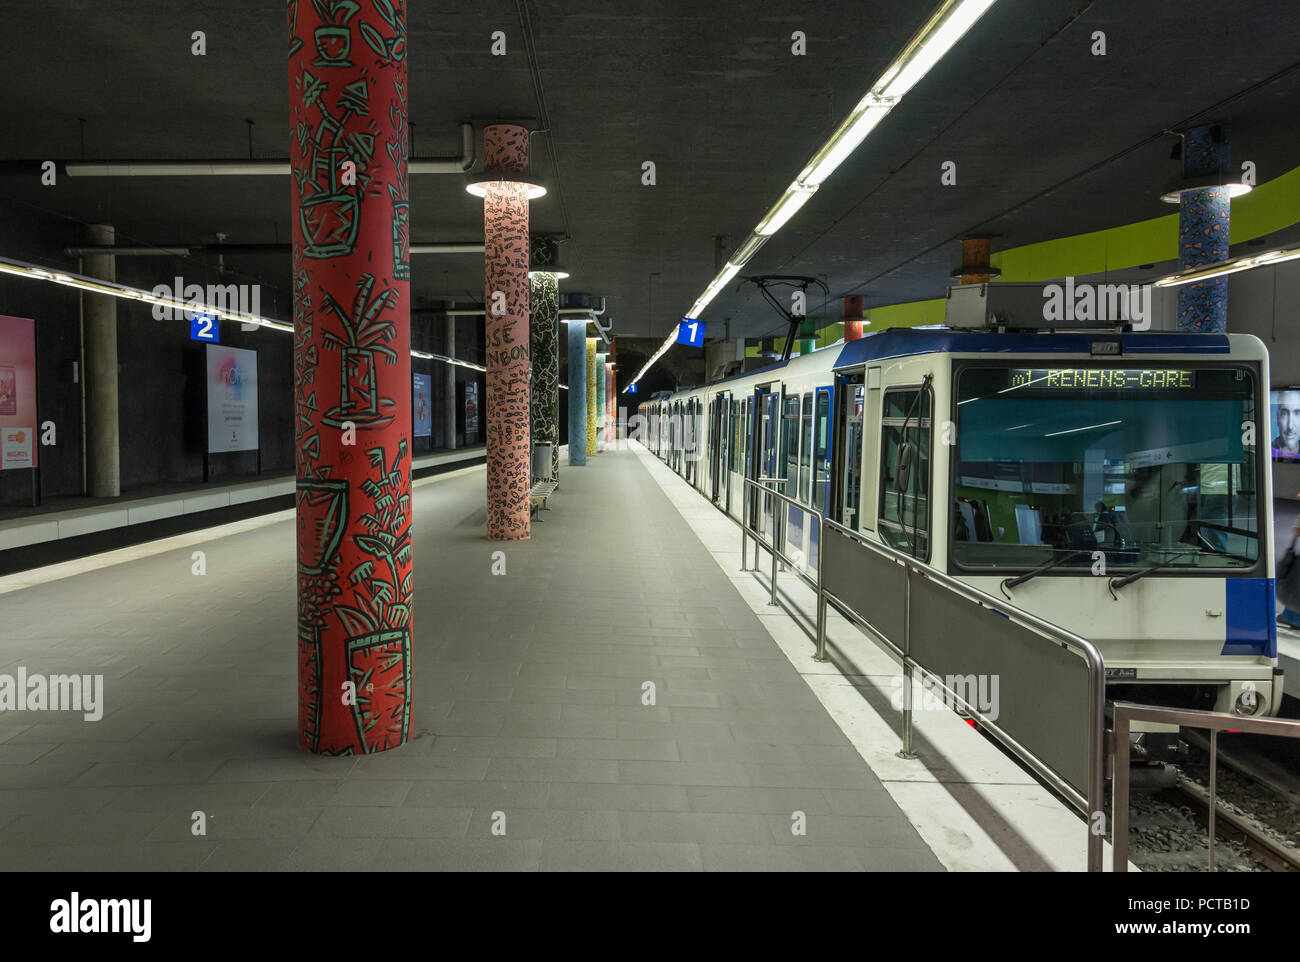 Der U-Bahnhof Renens, Lausanne, Kanton Waadt, West Switzerland, Schweiz  Stockfotografie - Alamy